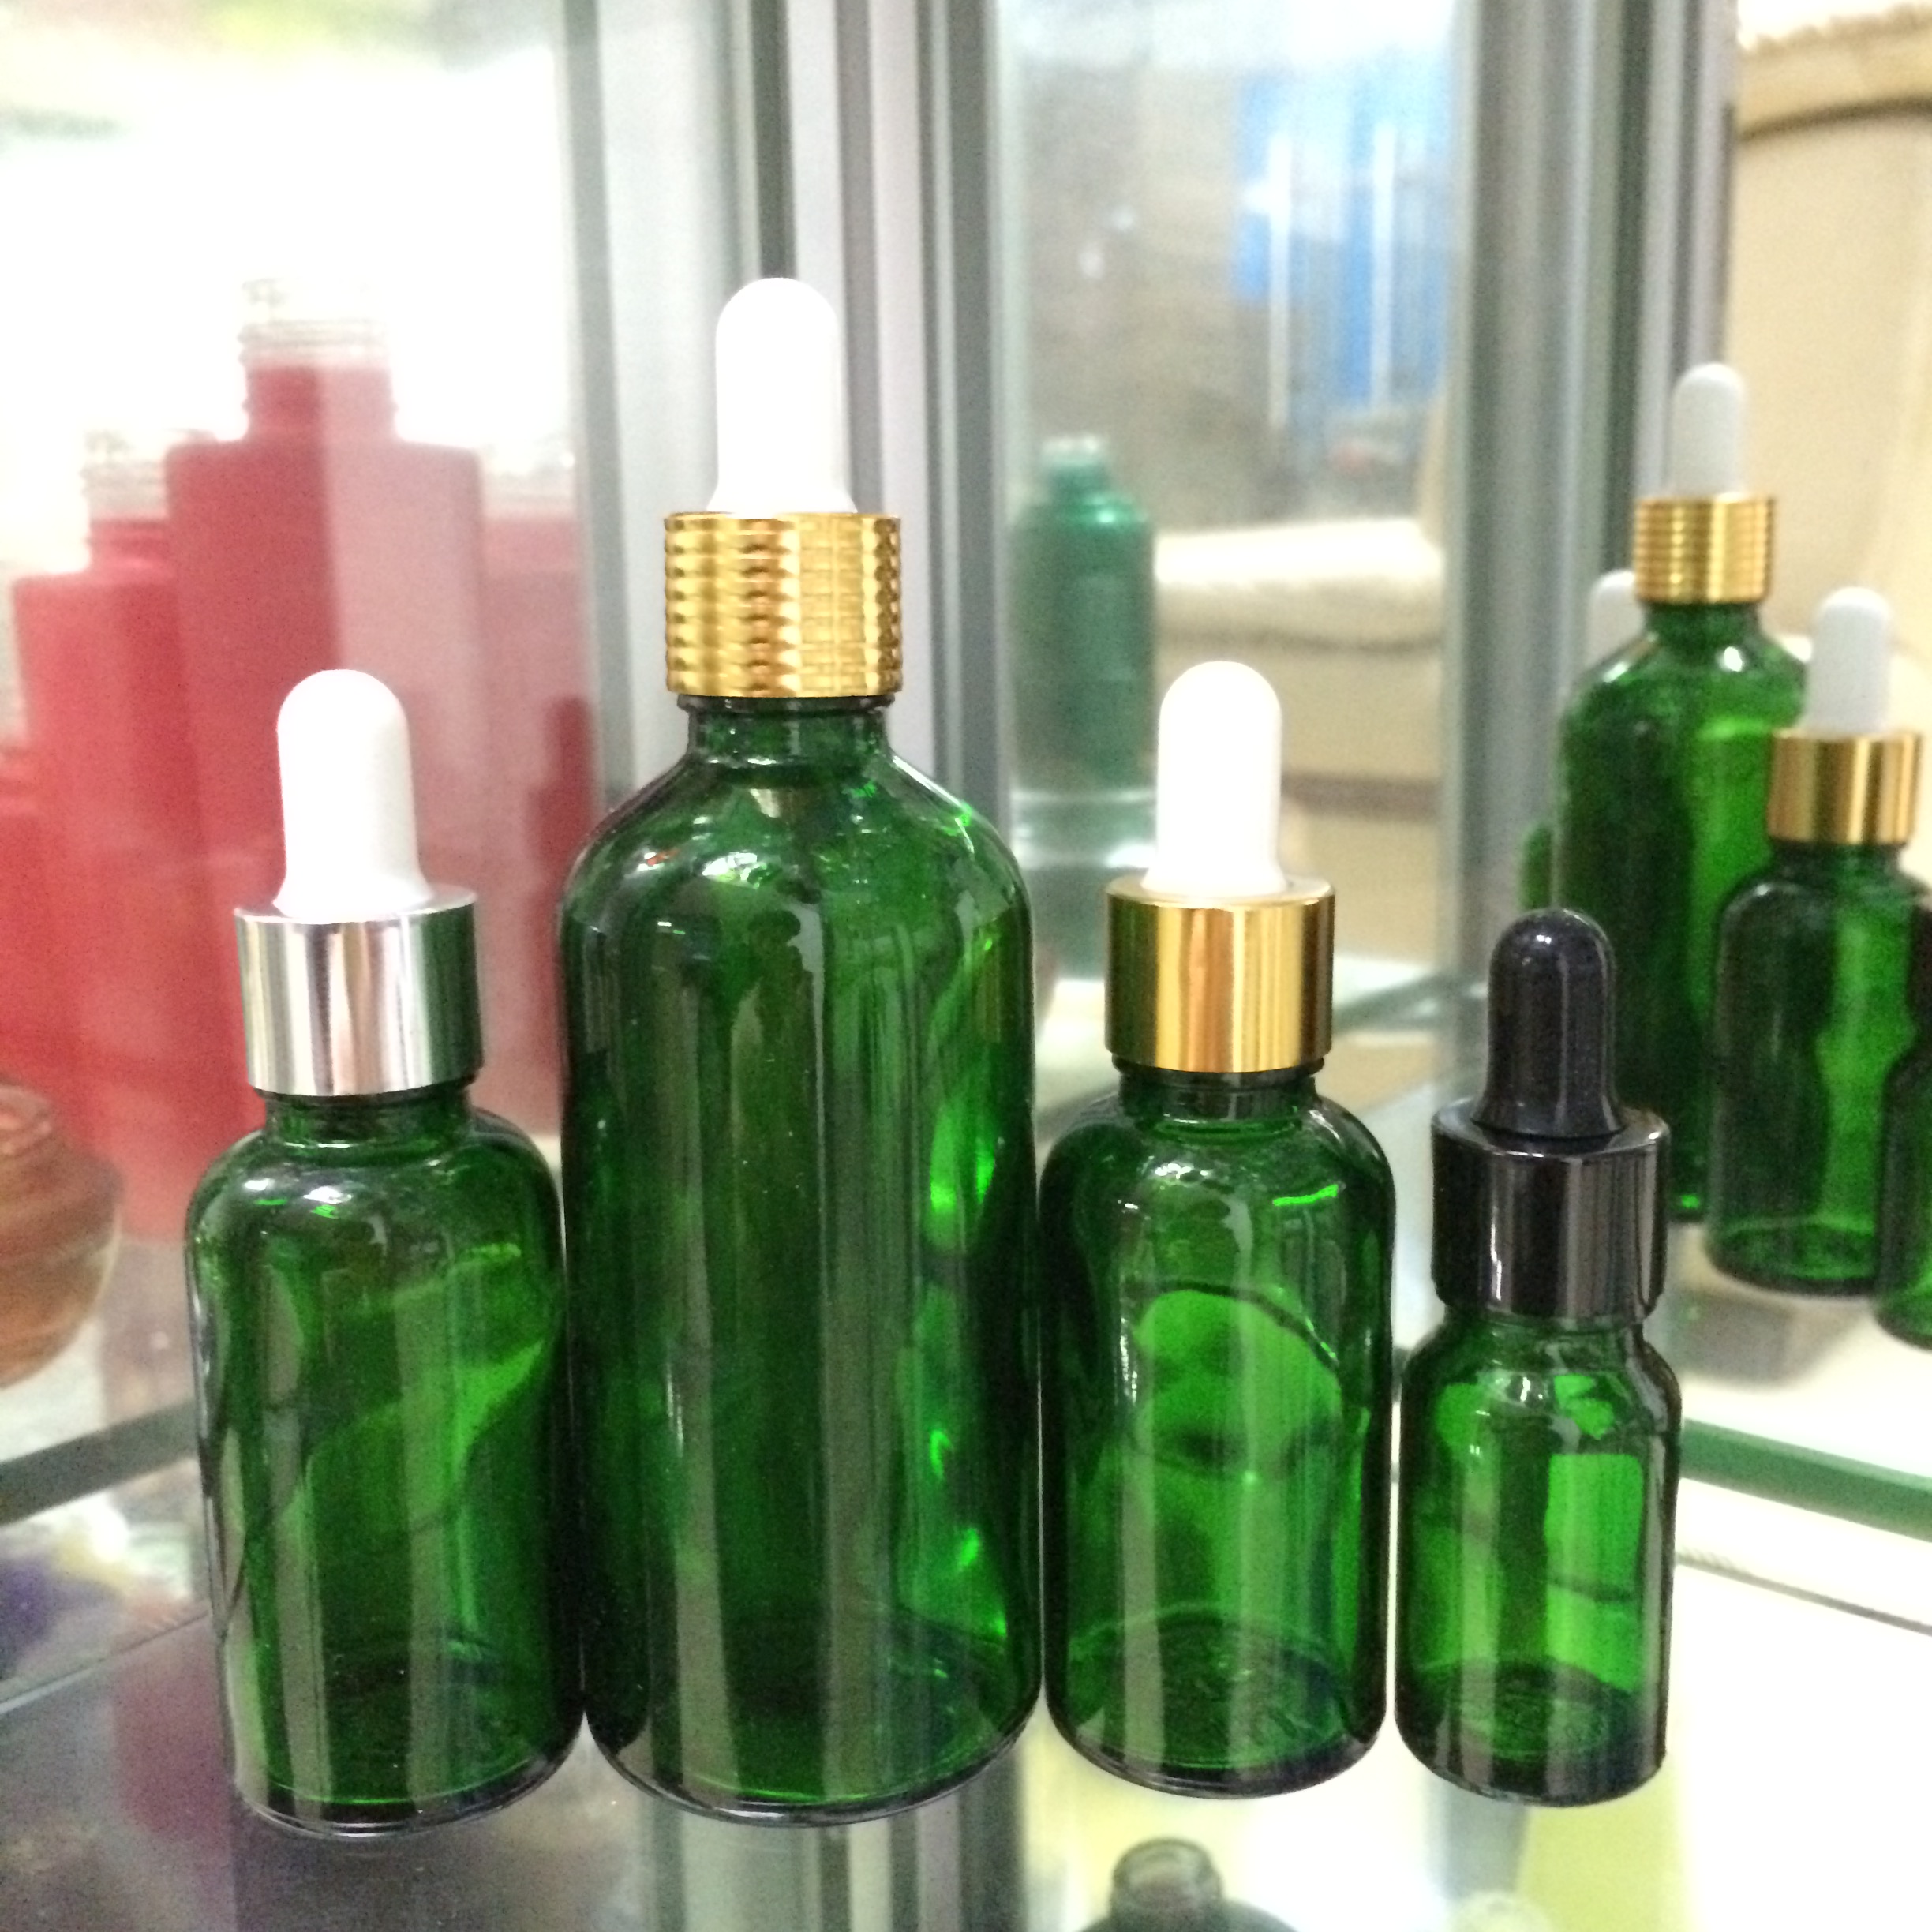 绿色光瓶透明瓶精油瓶包装包材绿色透明玻璃瓶绿色瓶子包材滴管瓶